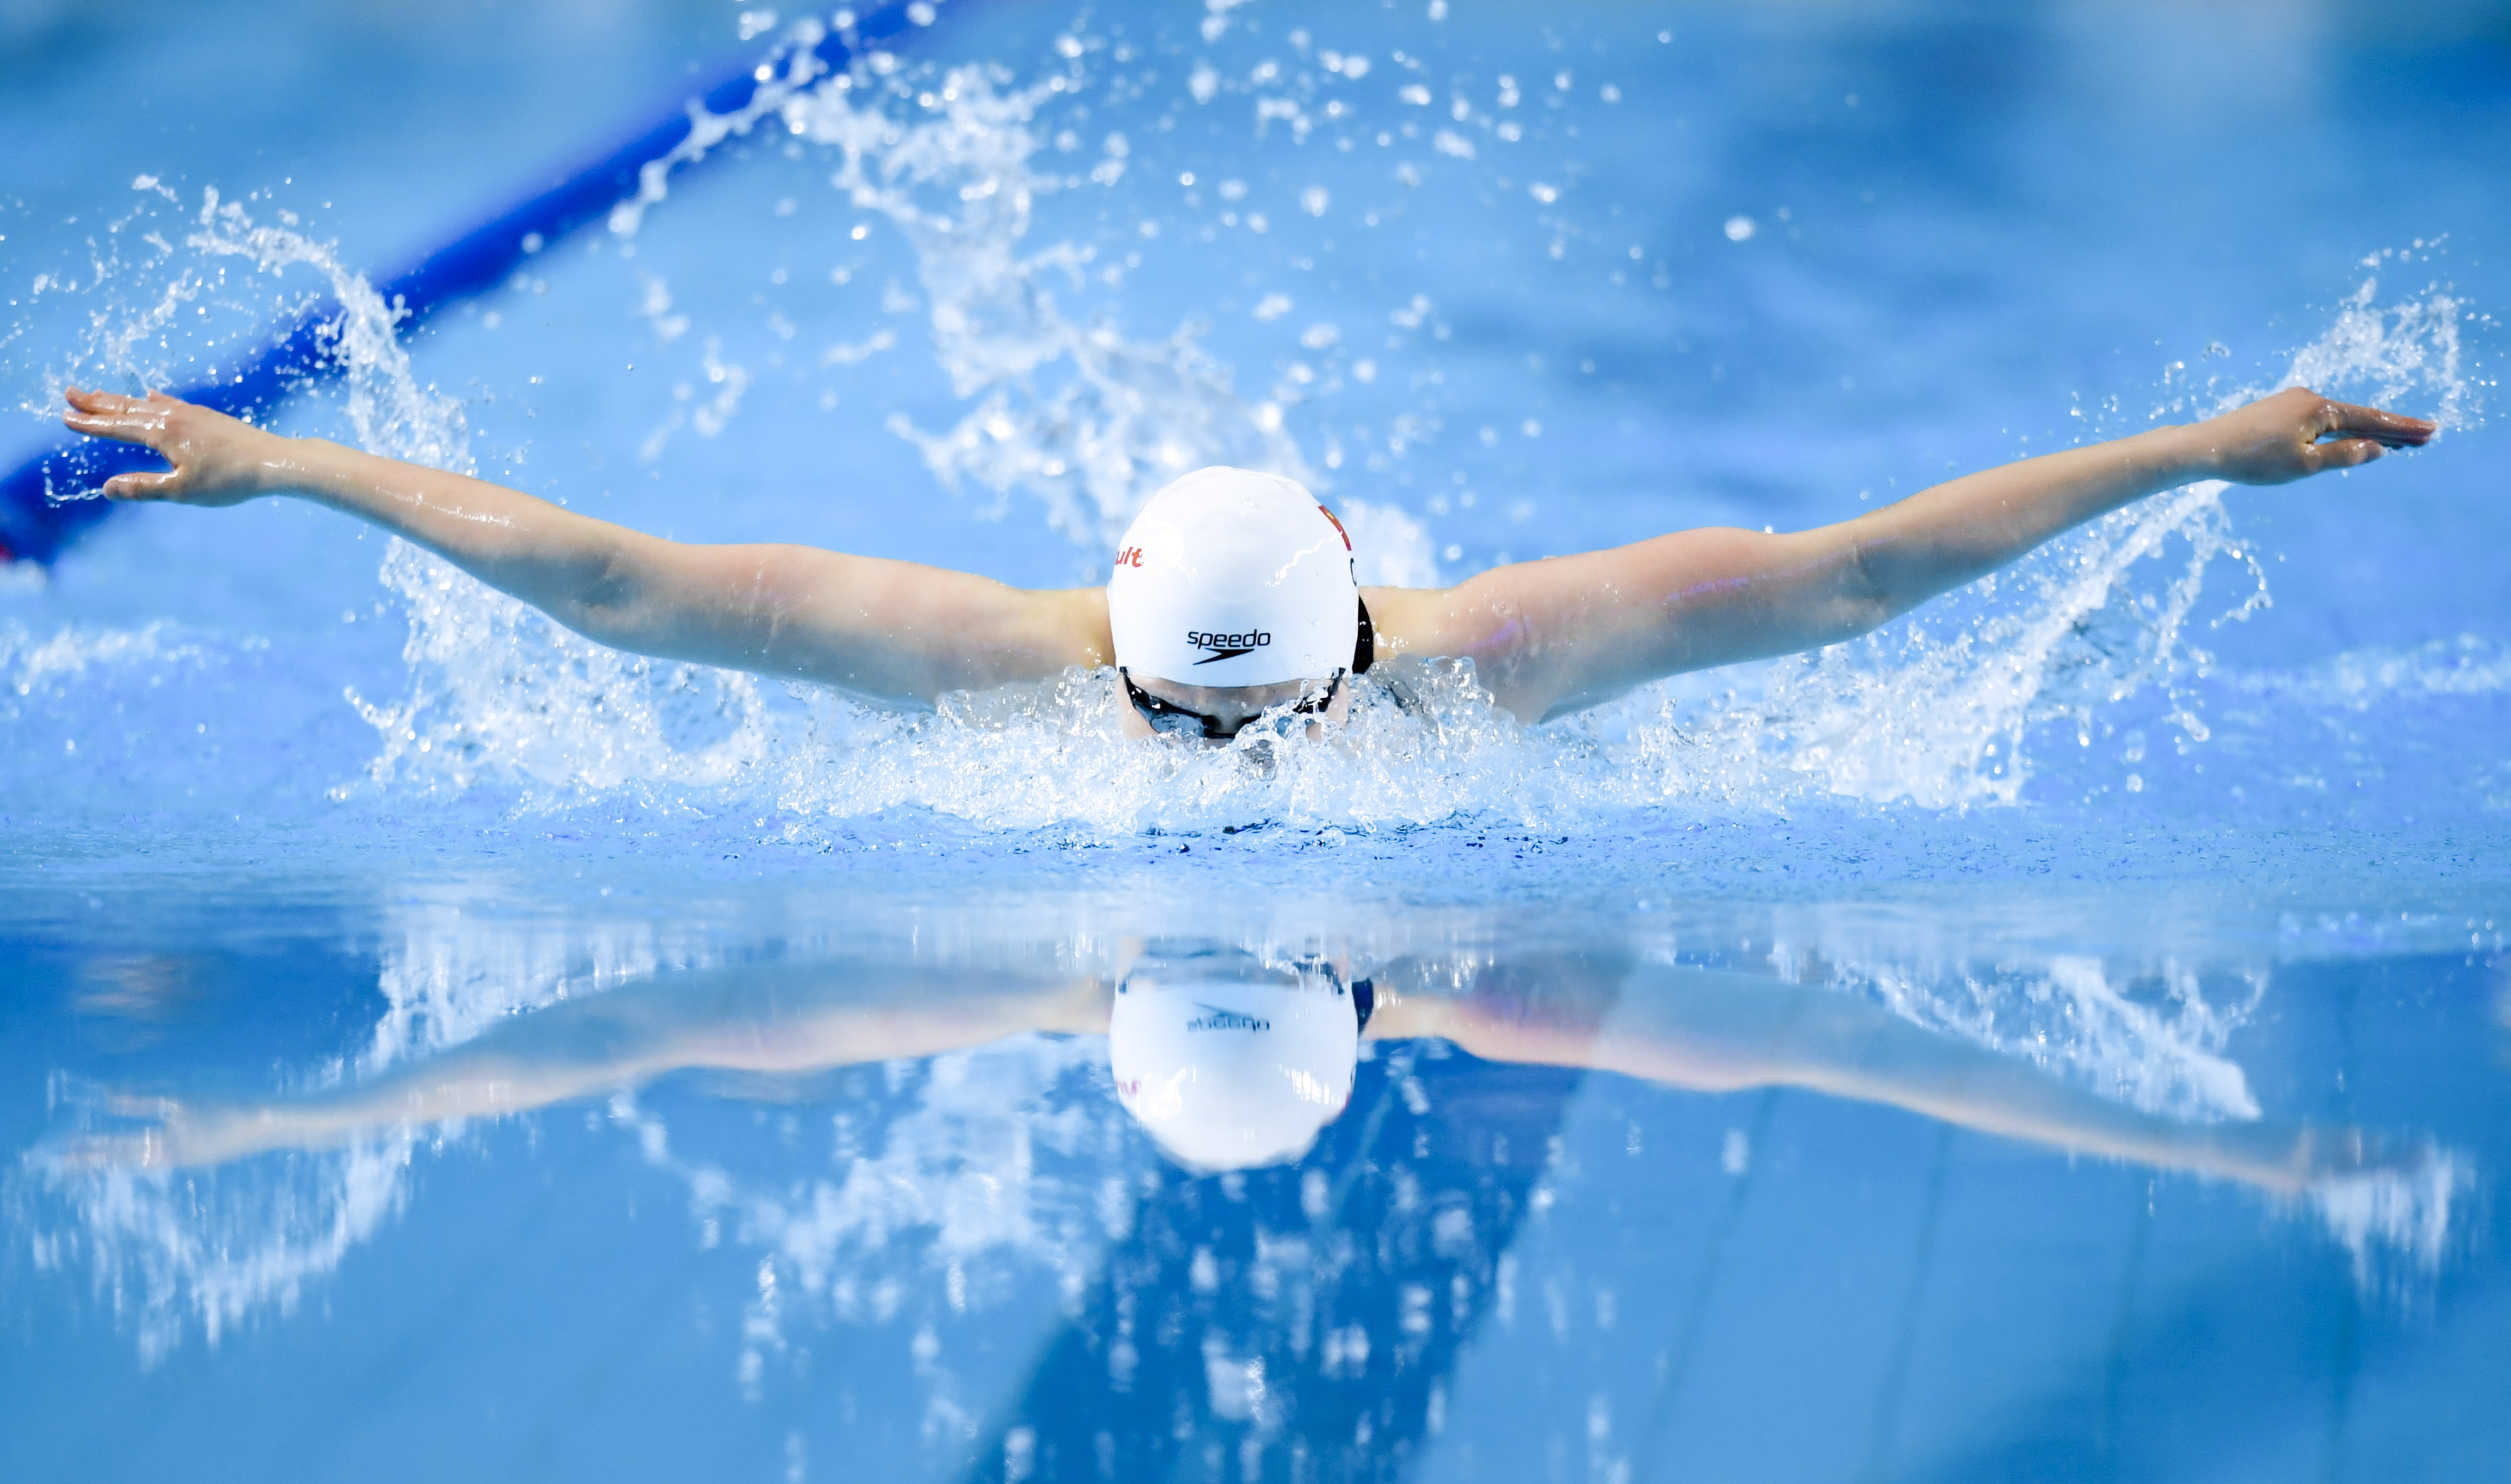 游泳体校甲组女子200米蝶泳决赛赛况